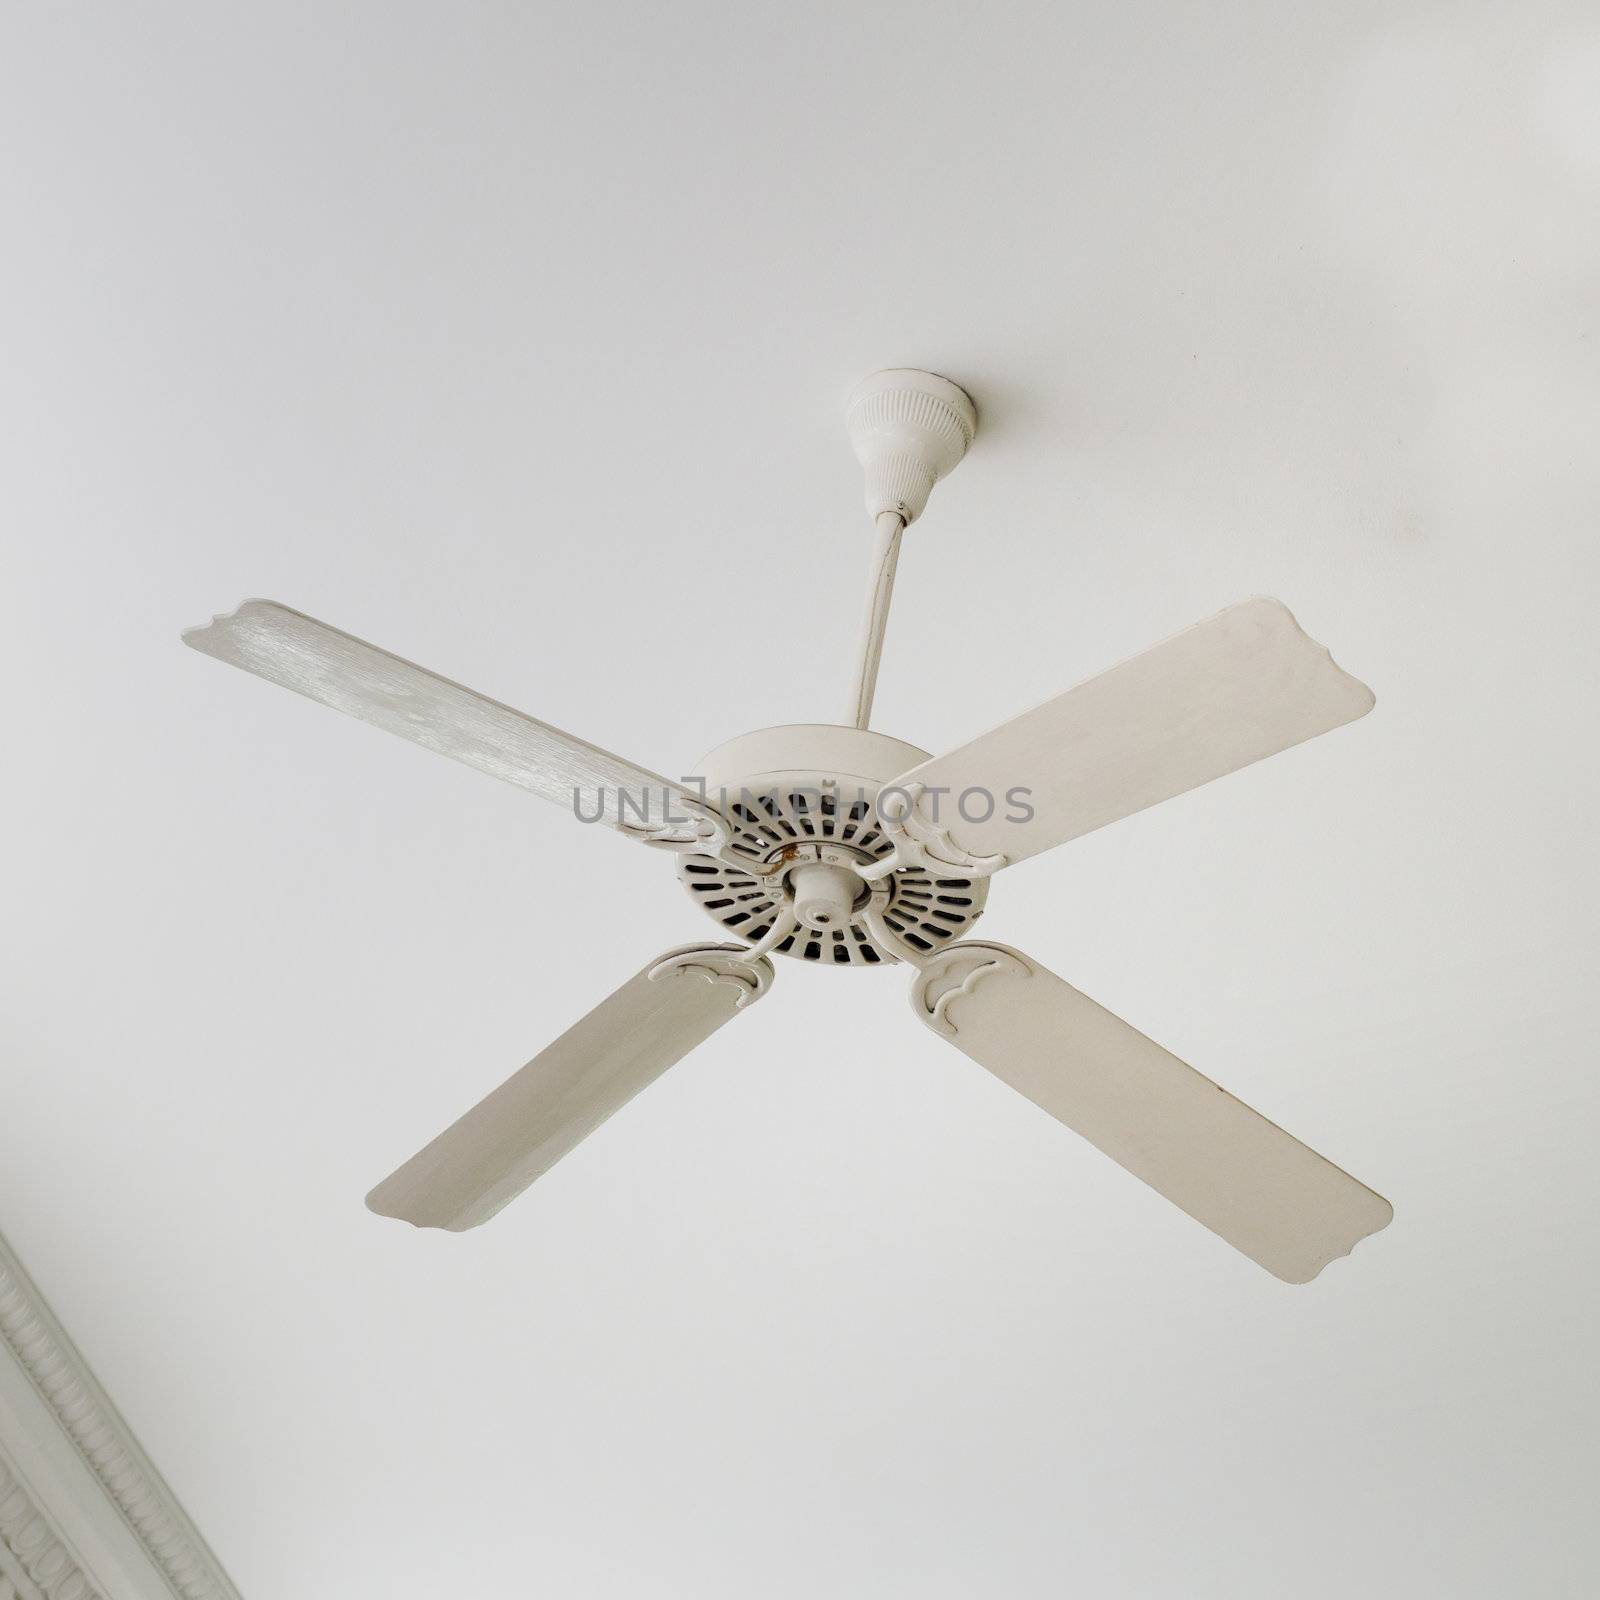 White ceiling fan in living room